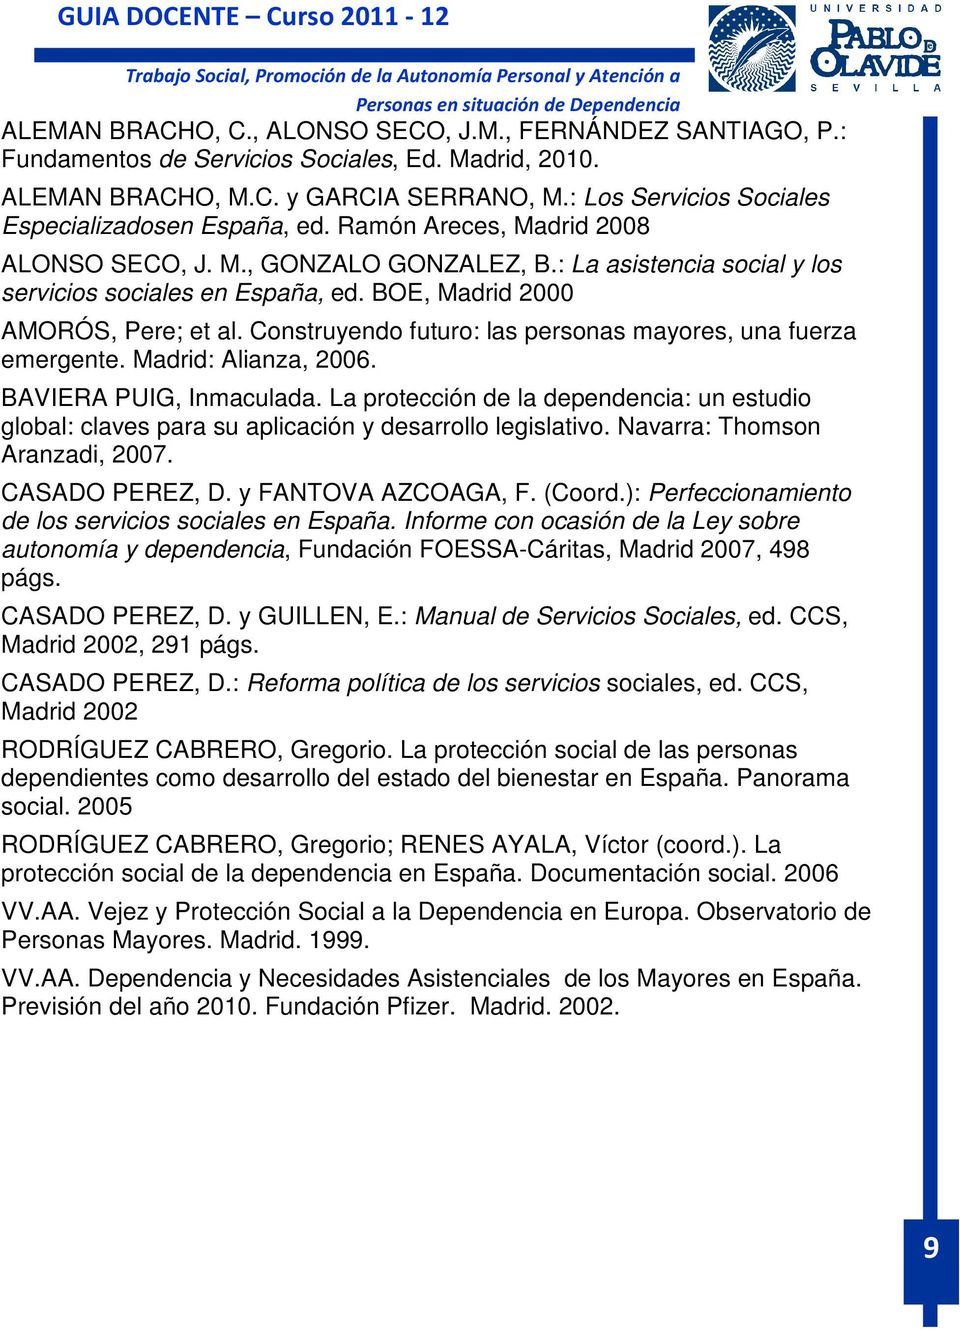 BOE, Madrid 2000 AMORÓS, Pere; et al. Construyendo futuro: las personas mayores, una fuerza emergente. Madrid: Alianza, 2006. BAVIERA PUIG, Inmaculada.